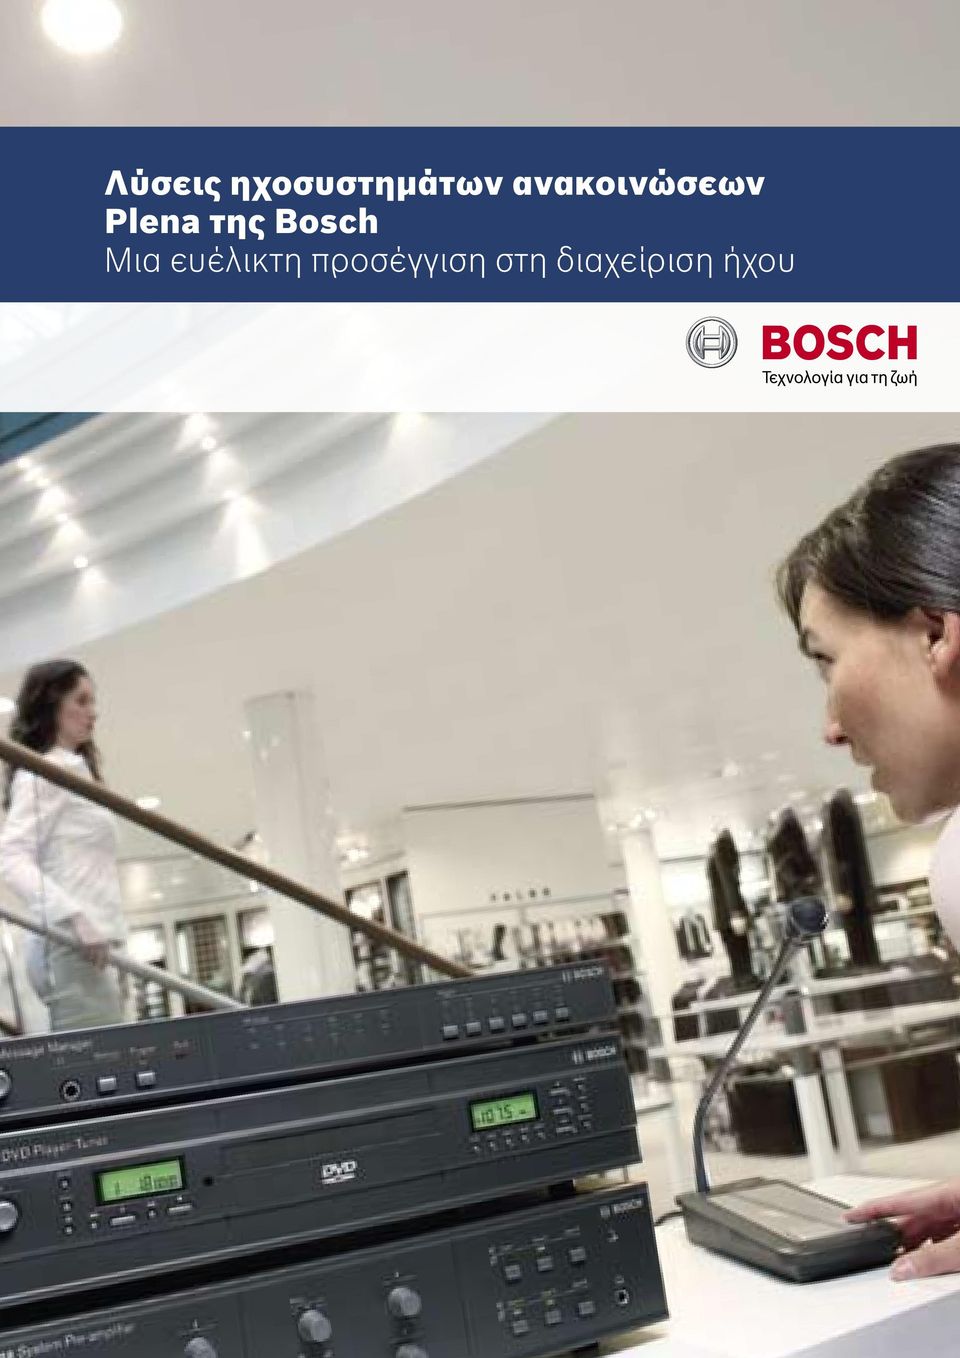 Bosch Μια ευέλικτη